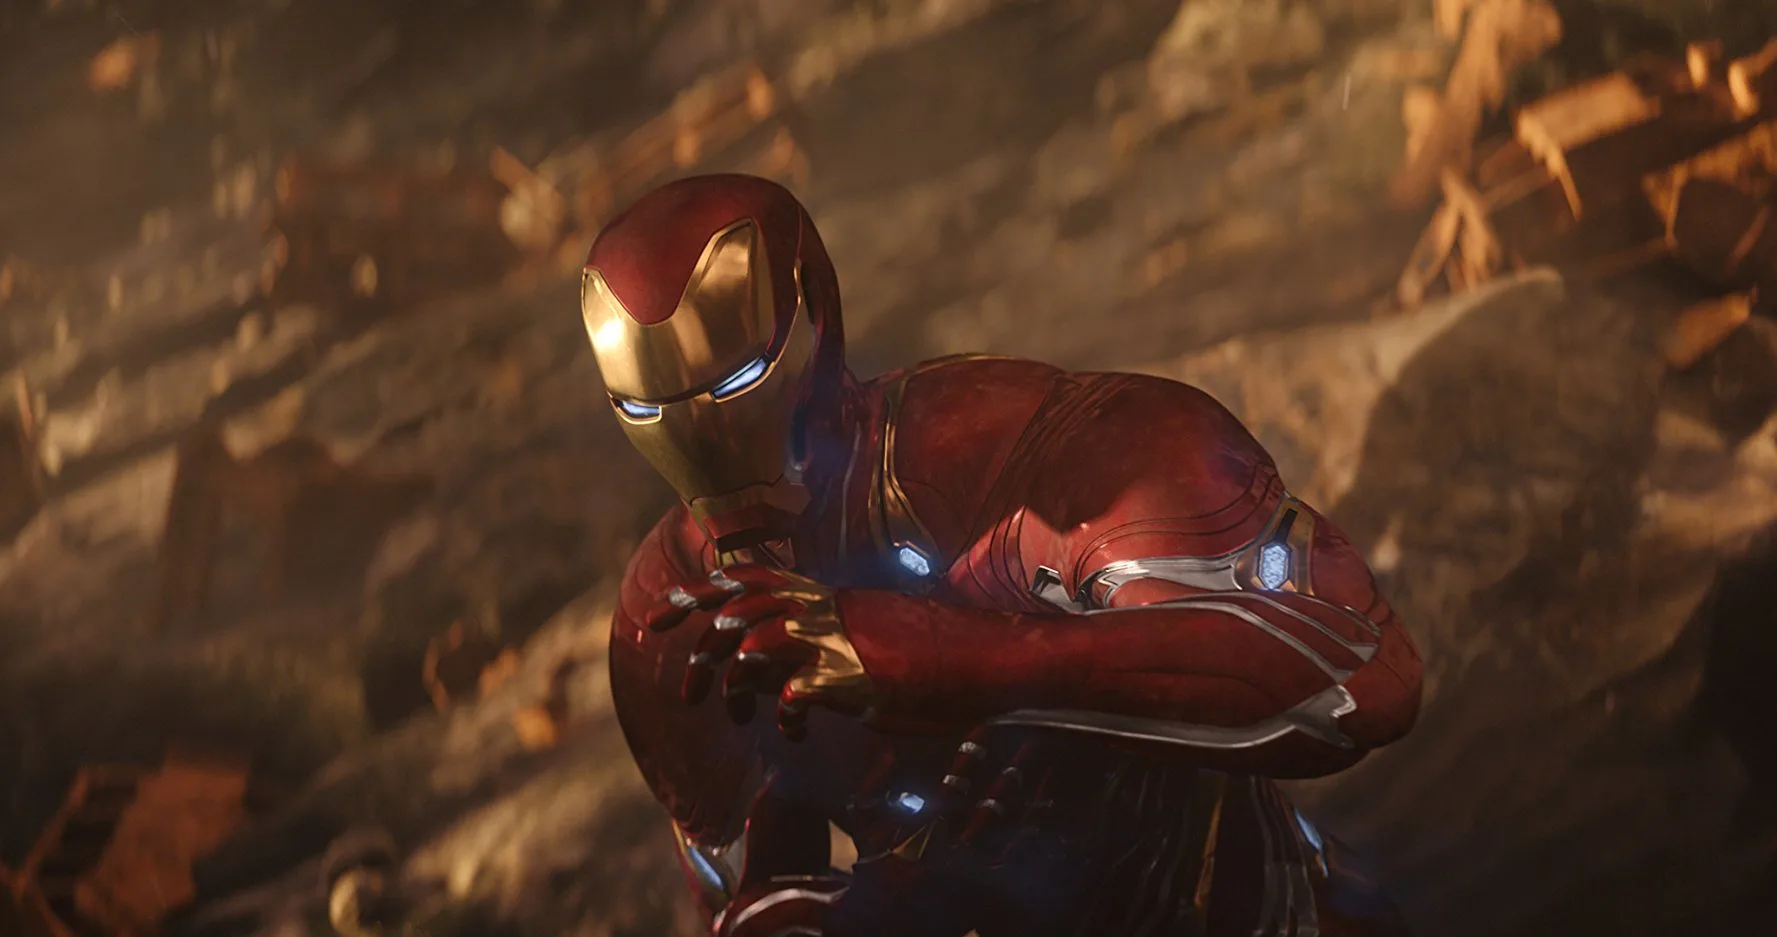 Robert Downey Jr. as Iron Man in a still from Avengers: Infinity War